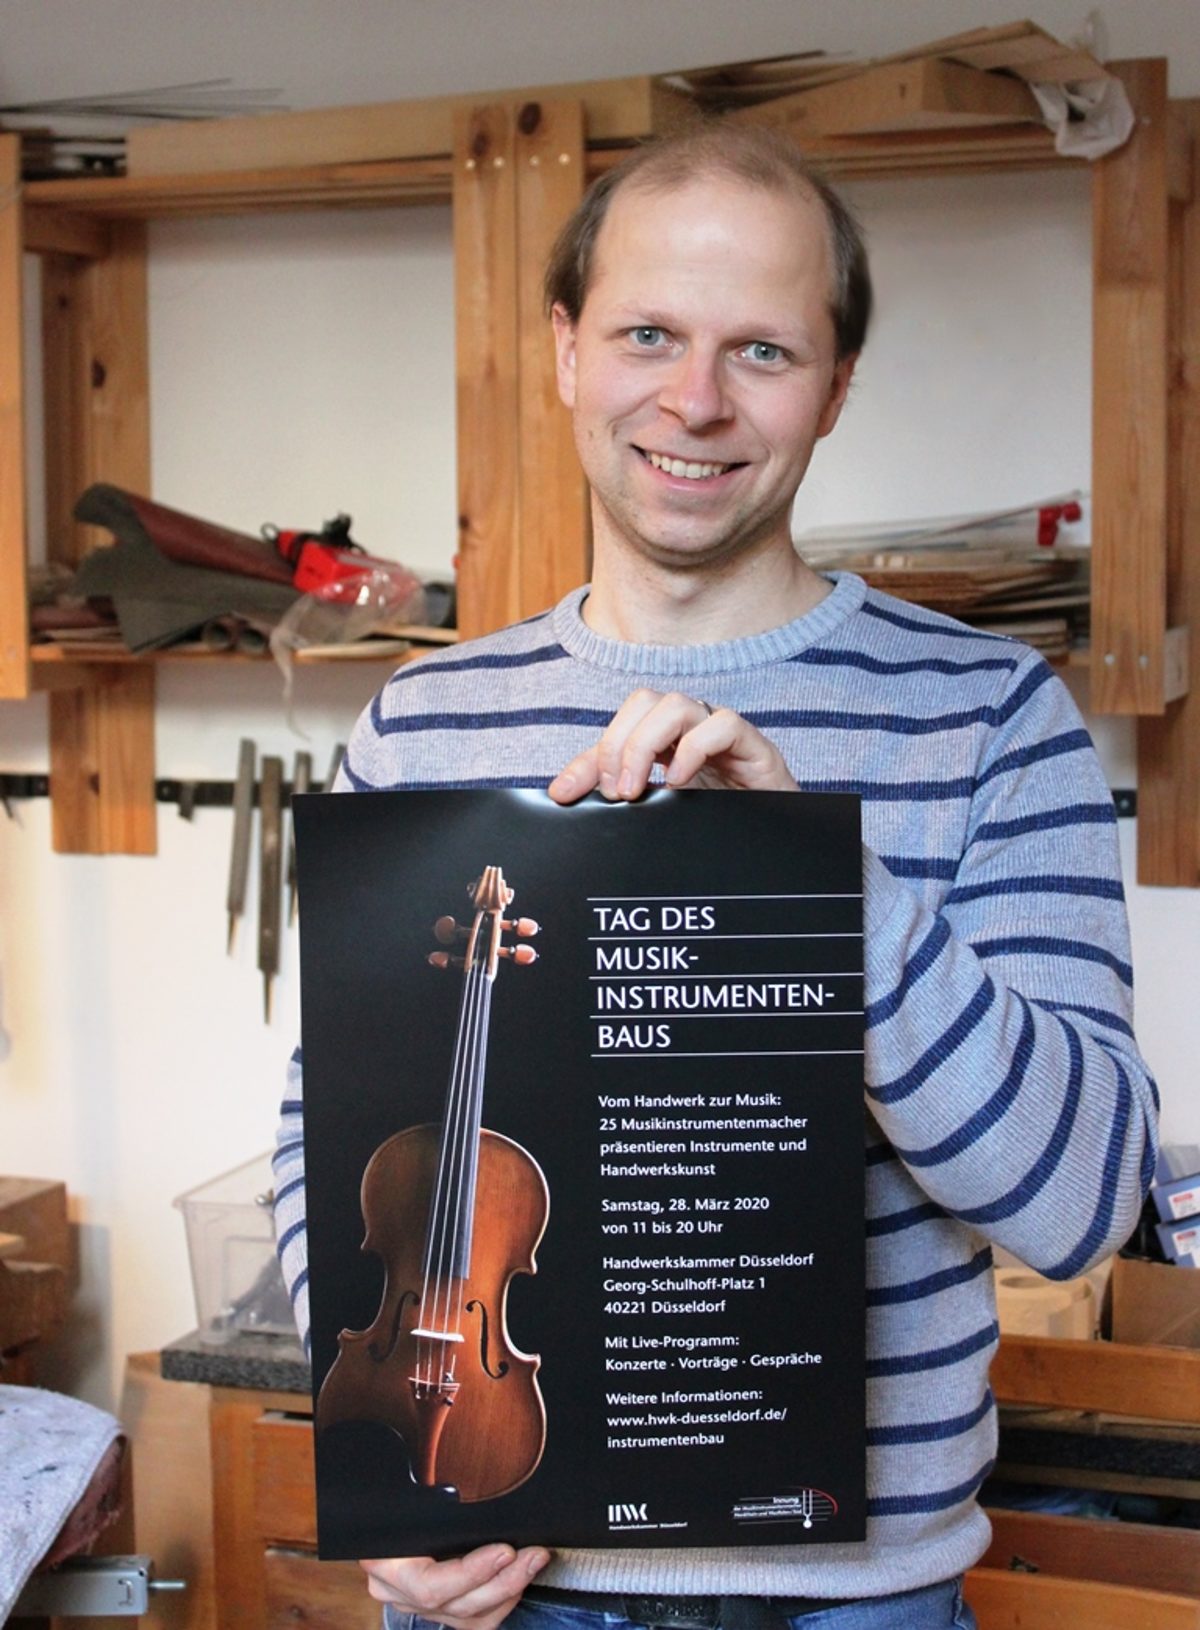 Der Geigenbauer mit eigenem Instrument - auf dem Plakat zum "Tag des Musikinstrumentenbaus"